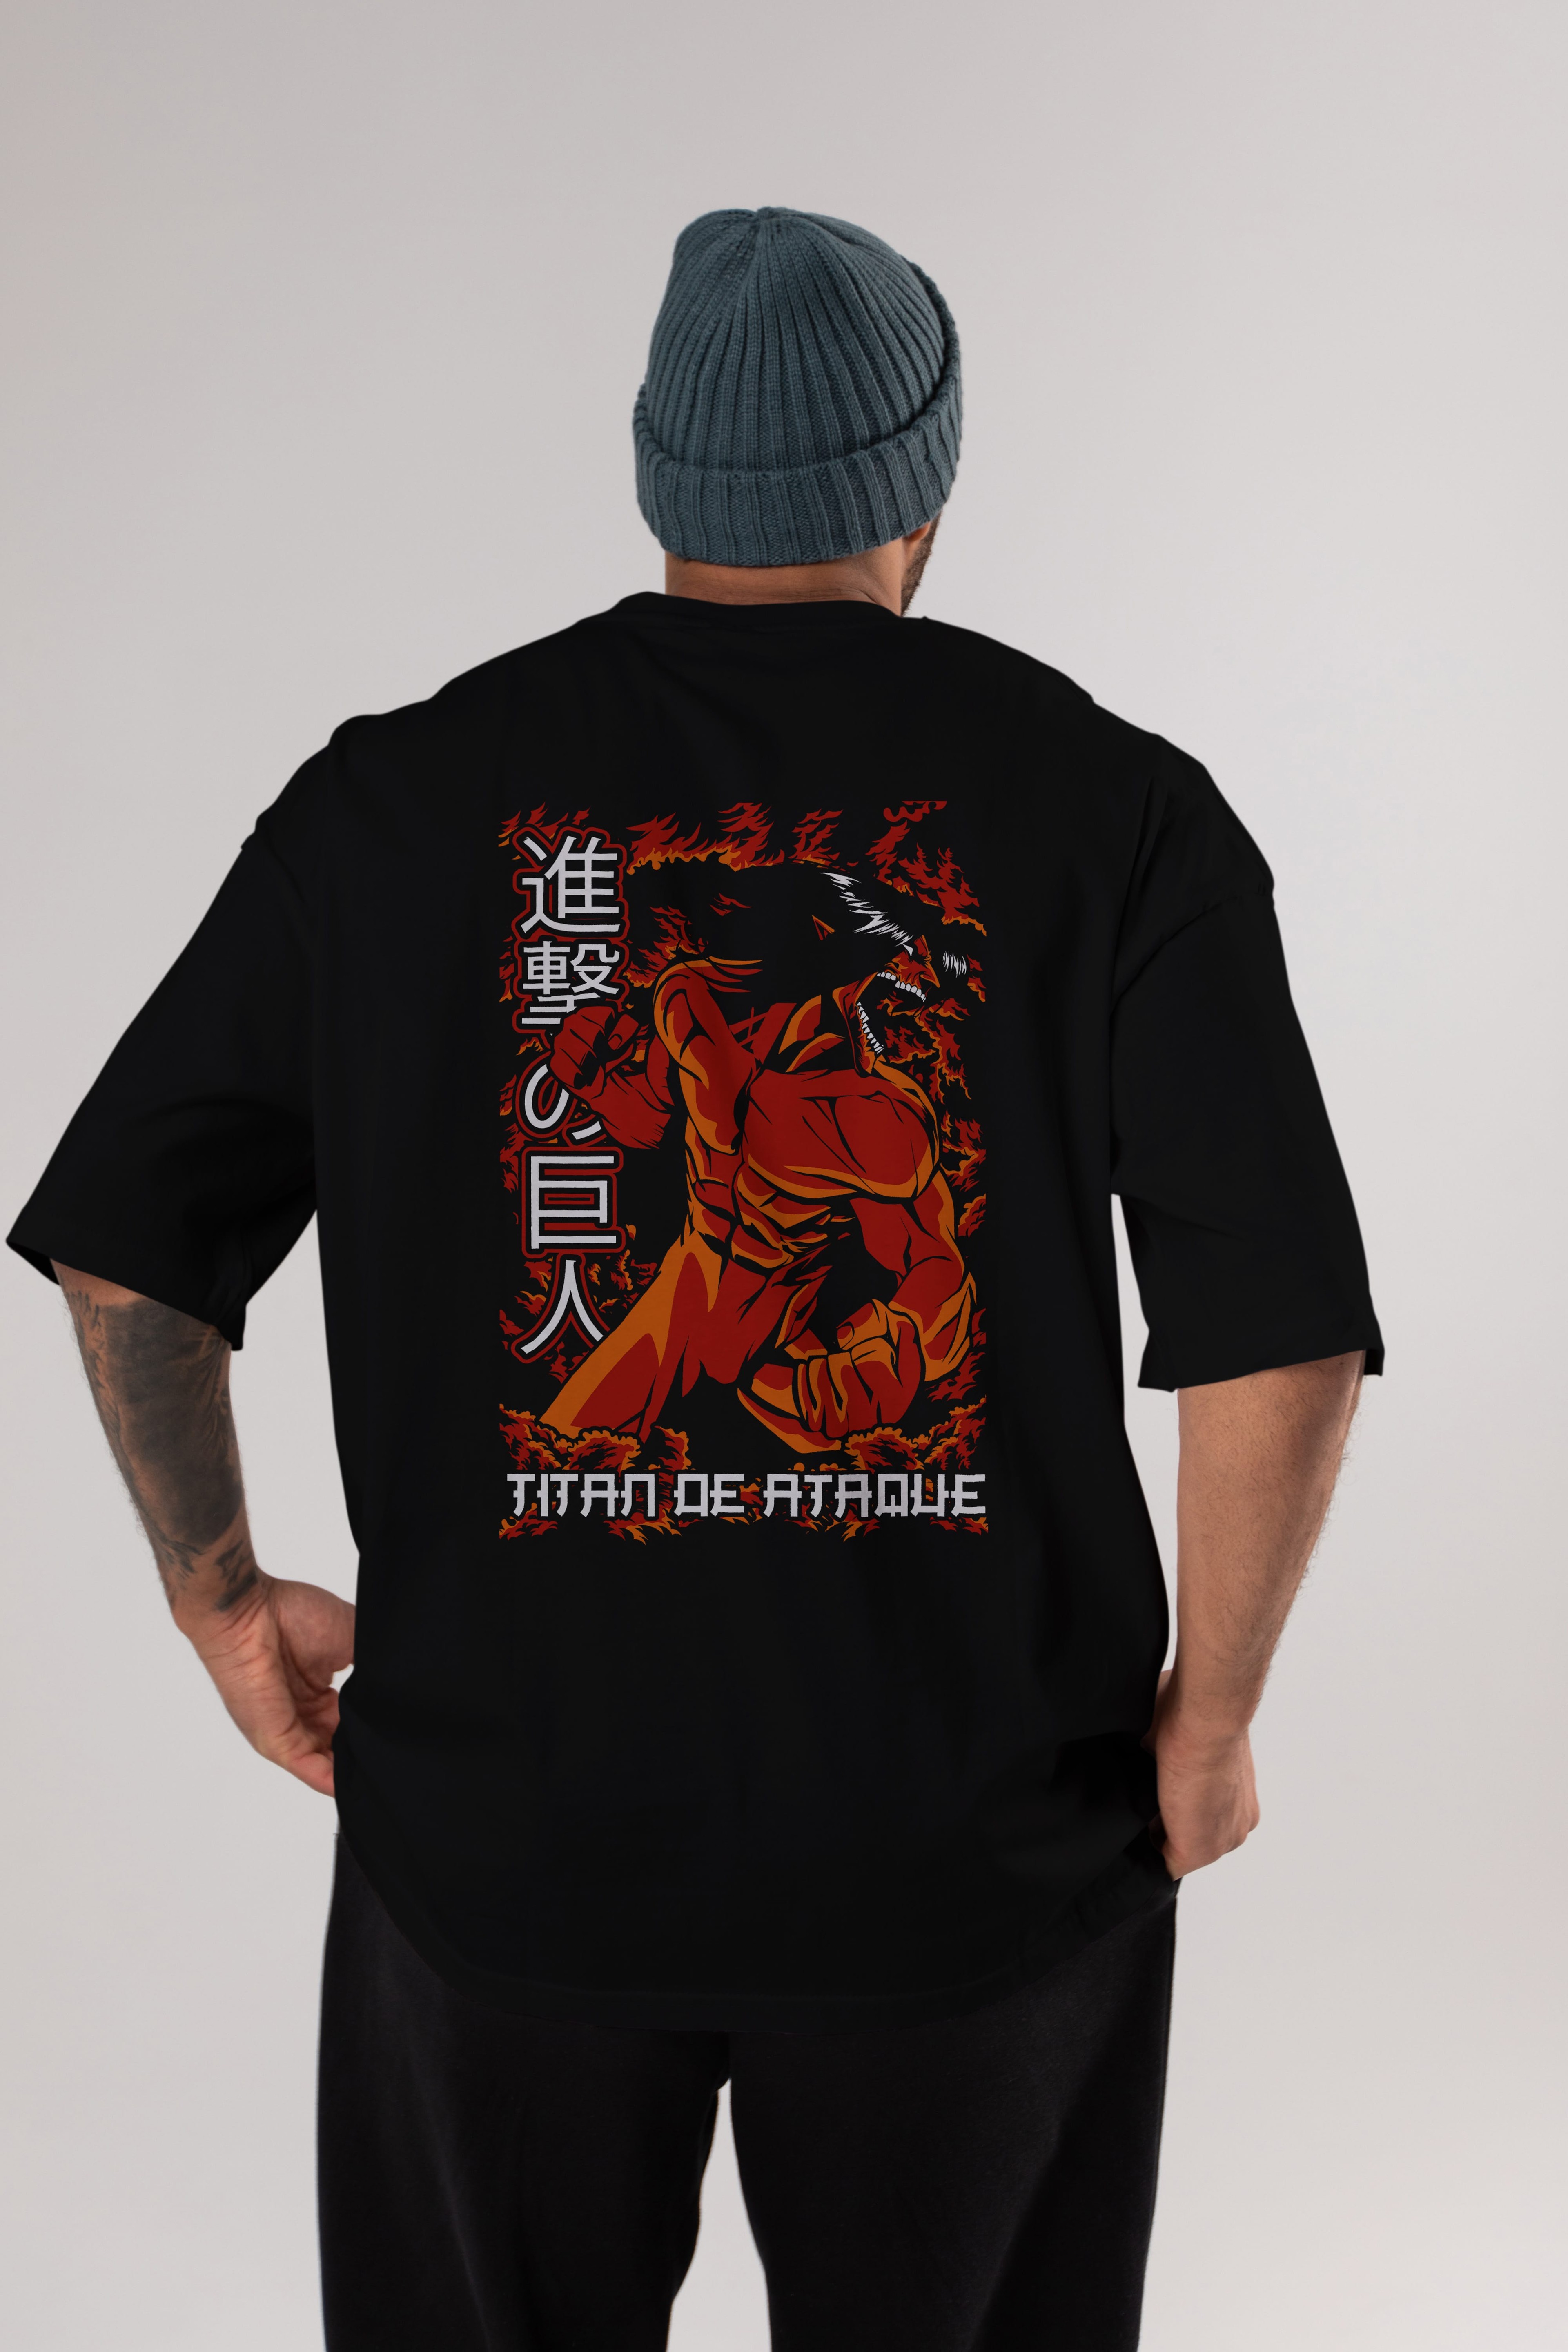 Eren Yeager Anime Arka Baskılı Oversize t-shirt Erkek Kadın Unisex %100 pamuk tişort